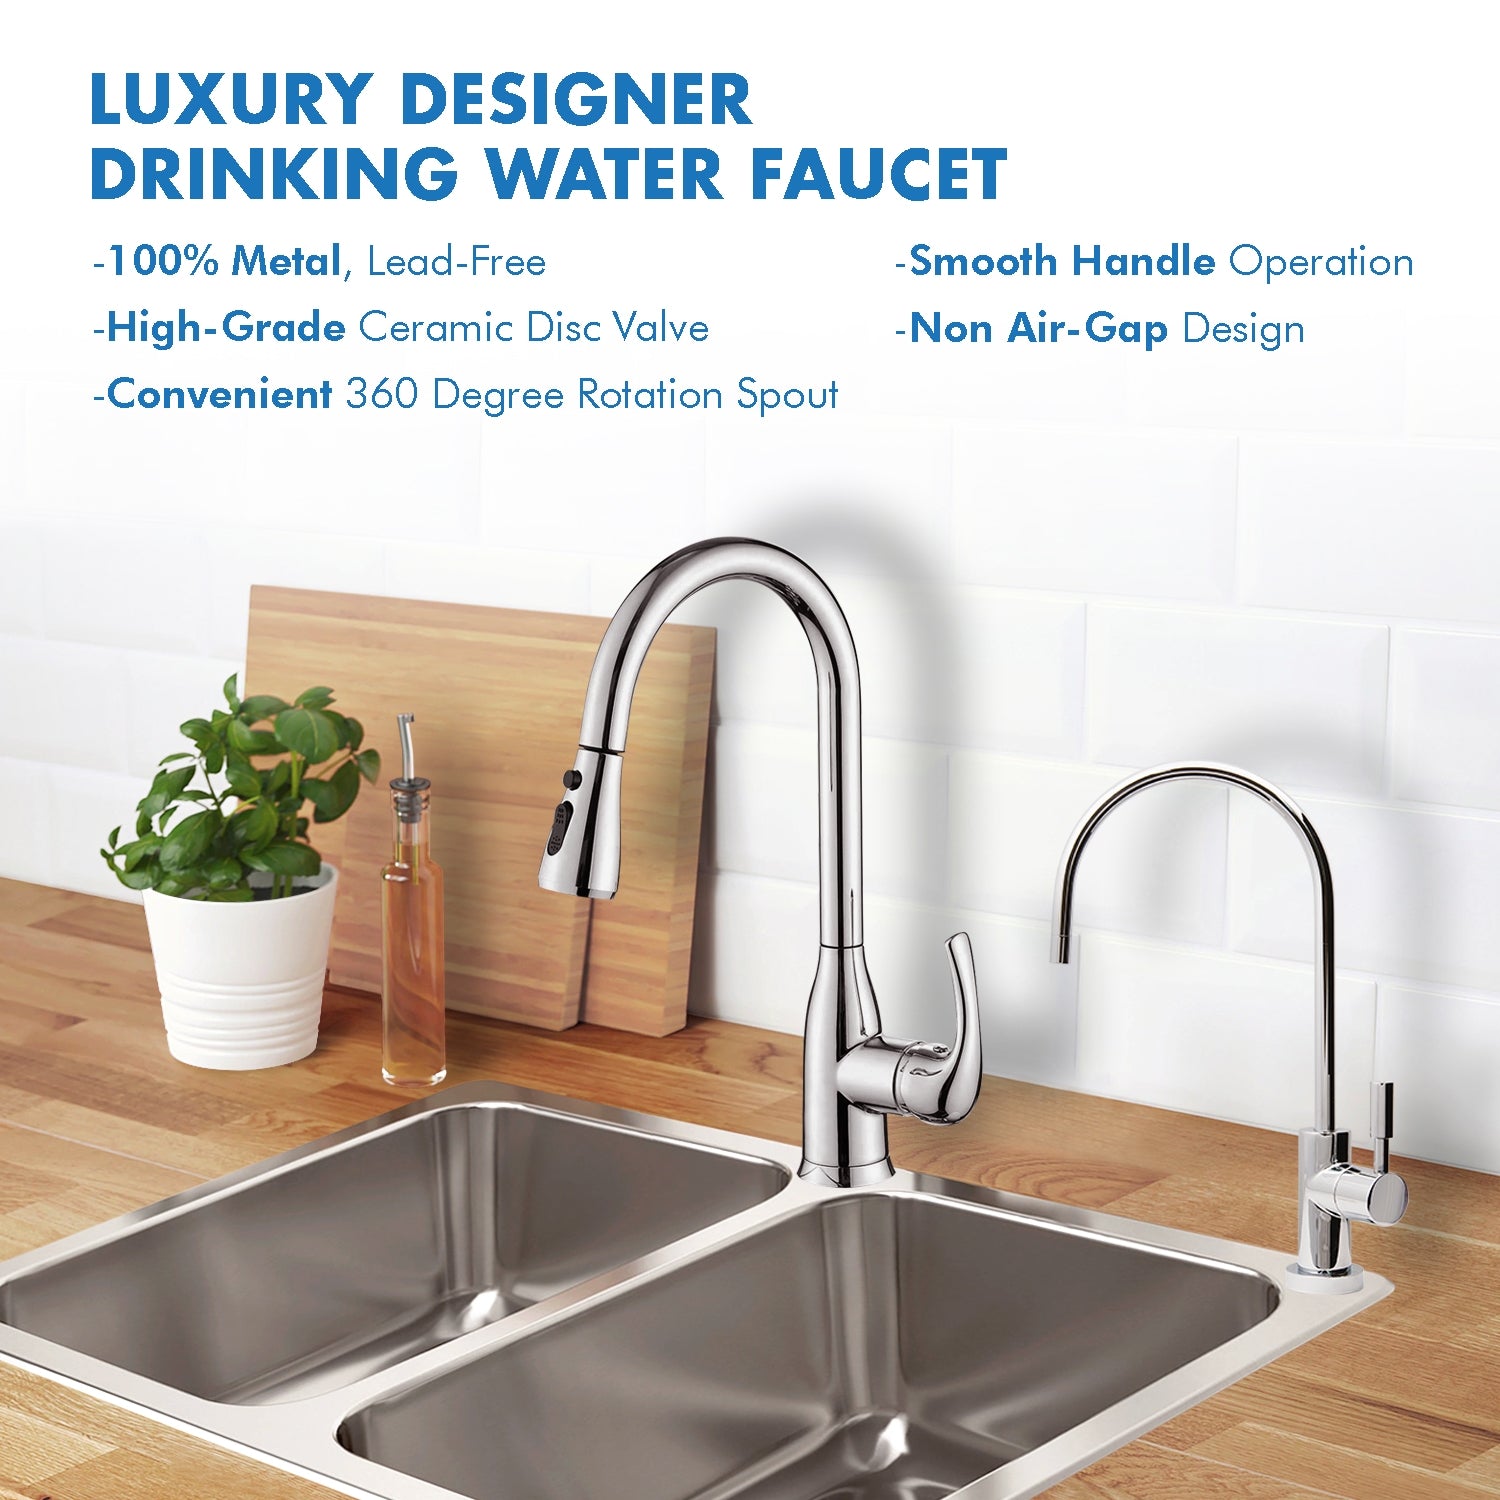 APEC Ceramic Disc Luxury Designer Reverse Osmosis Faucet - Chrome Bright, Lead-Free